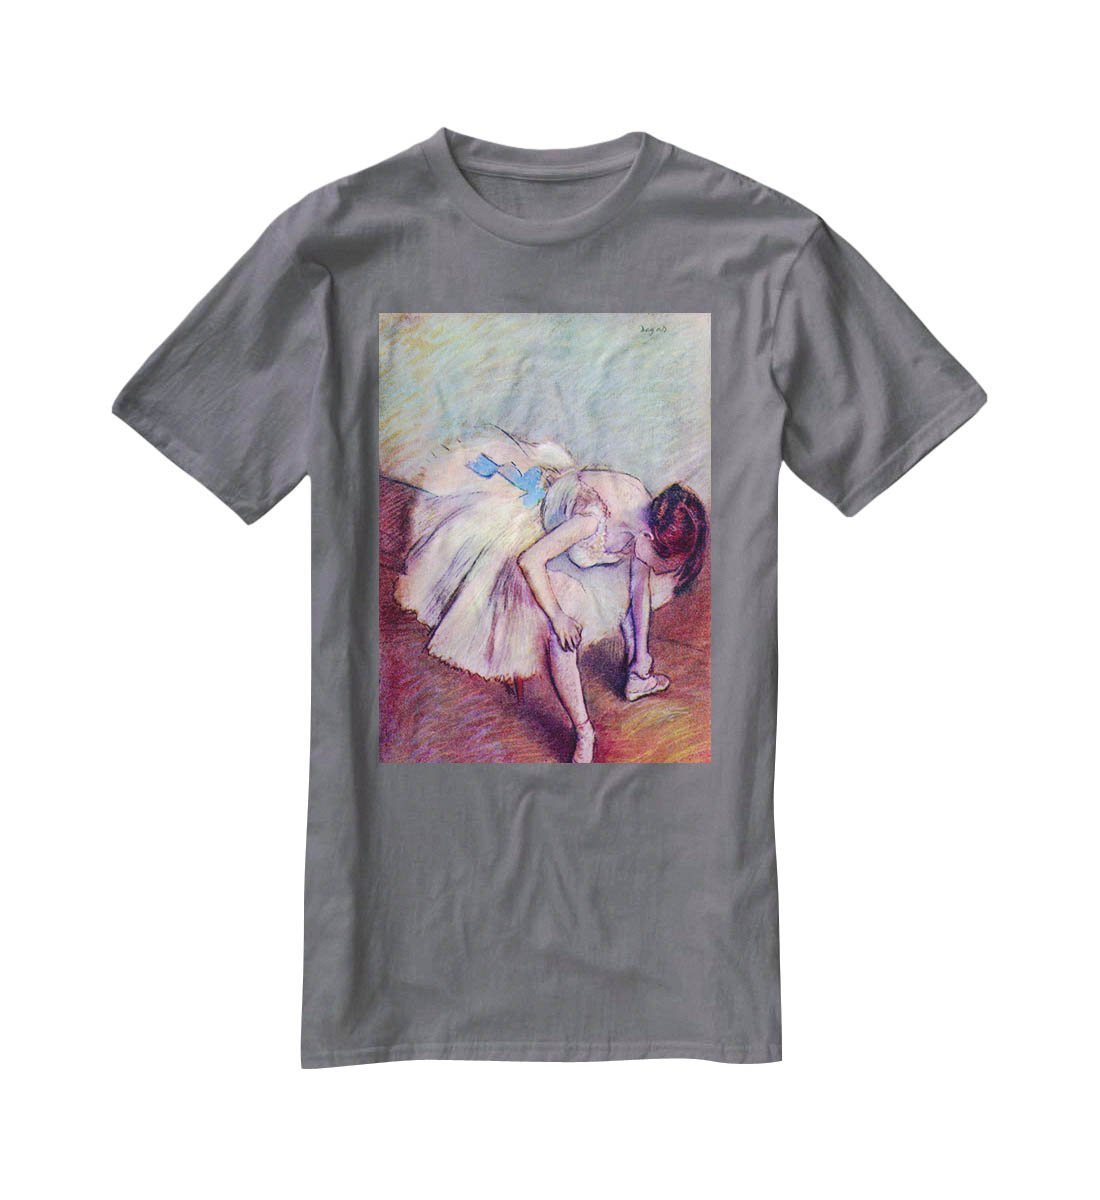 Dancer 2 by Degas T-Shirt - Canvas Art Rocks - 3